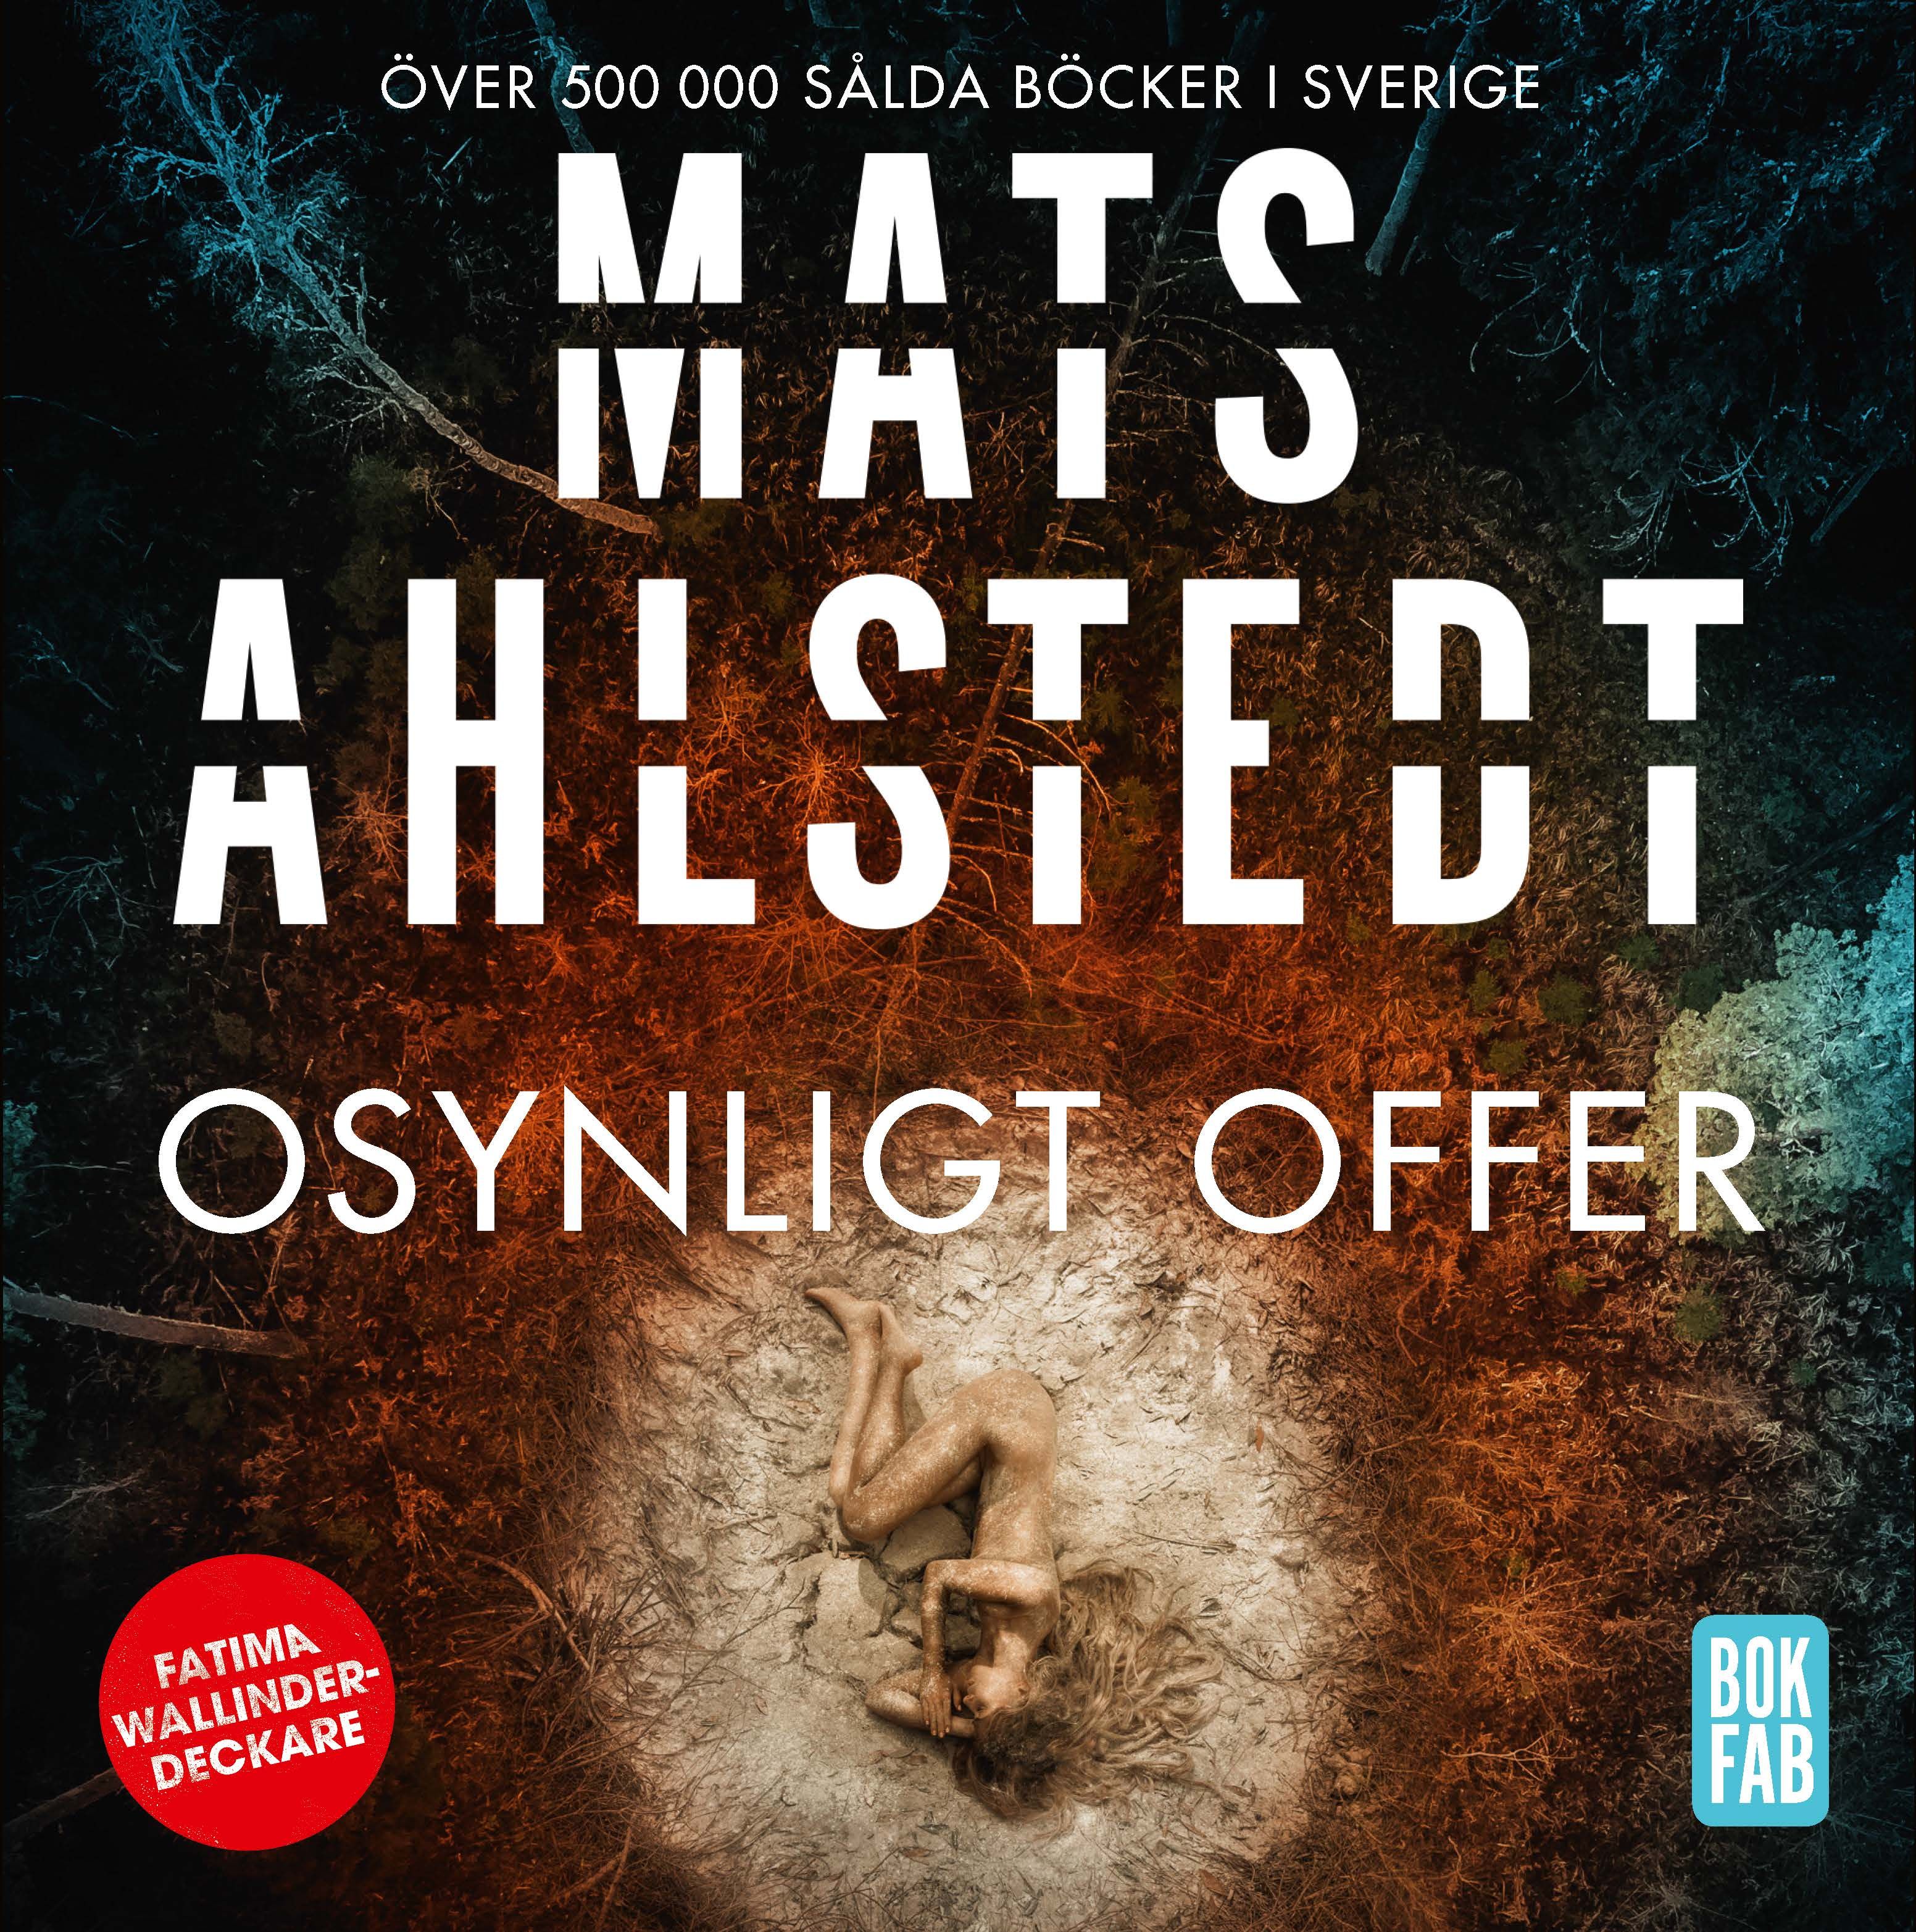 Osynligt offer, ljudbok av Mats Ahlstedt